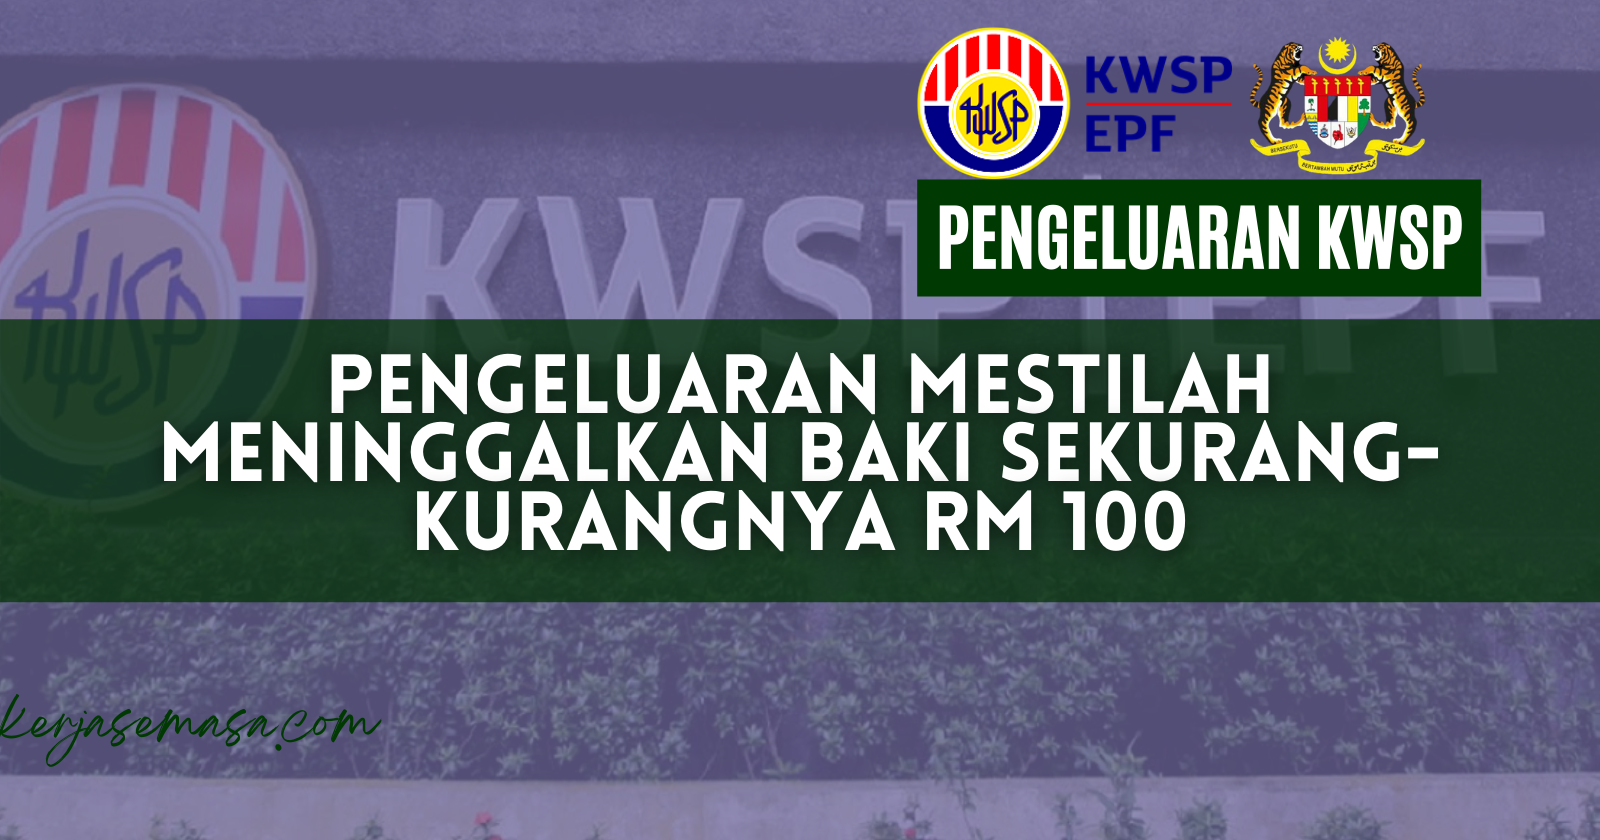 Pengeluaran KWSP Wajib Meninggalkan Baki Sekurang-kurangnya RM 100